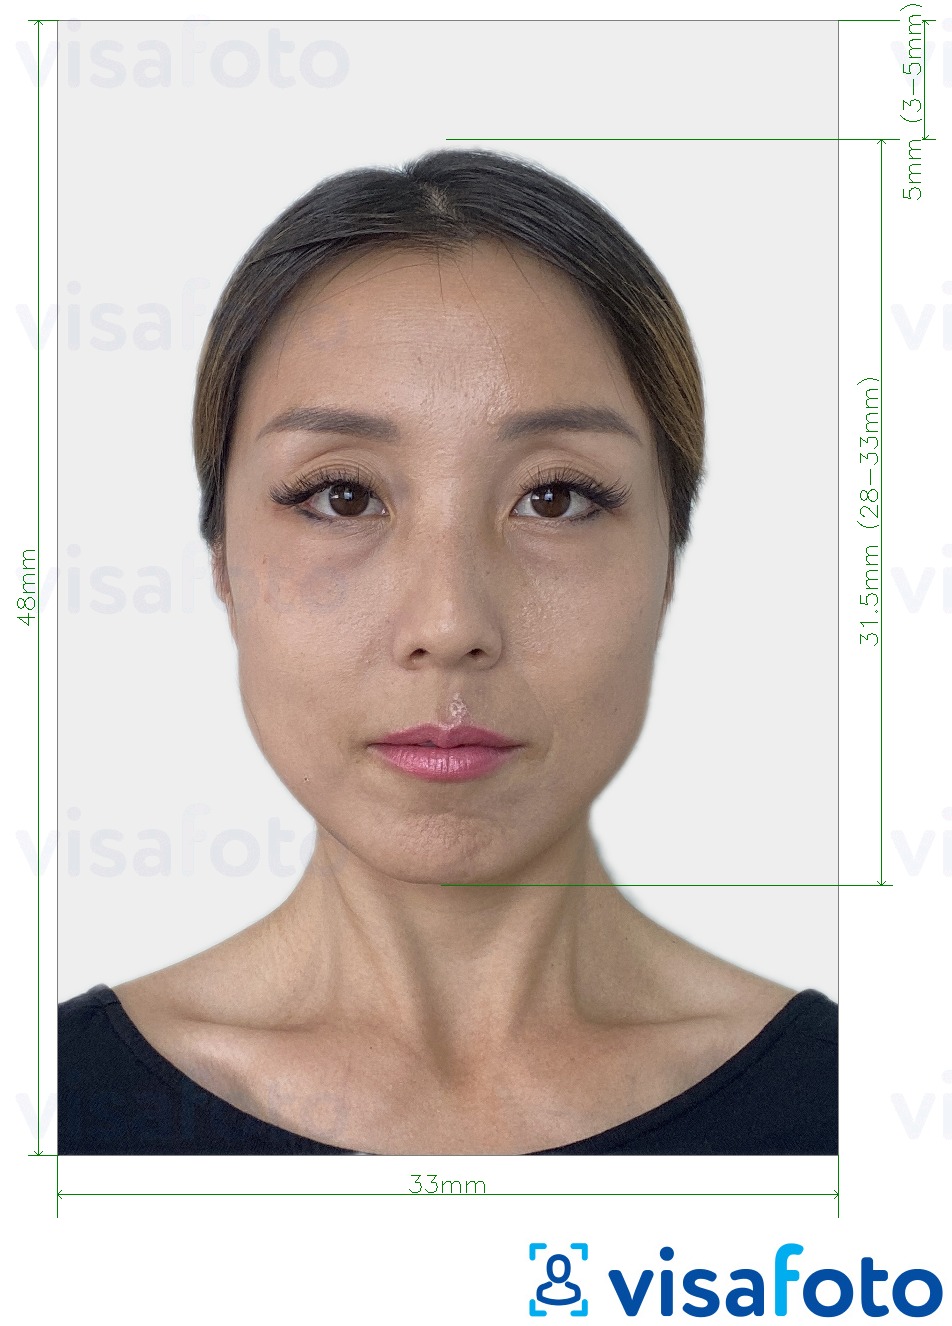 Esempio di foto per China Green Card 33x48 mm con specifiche delle dimensioni esatte